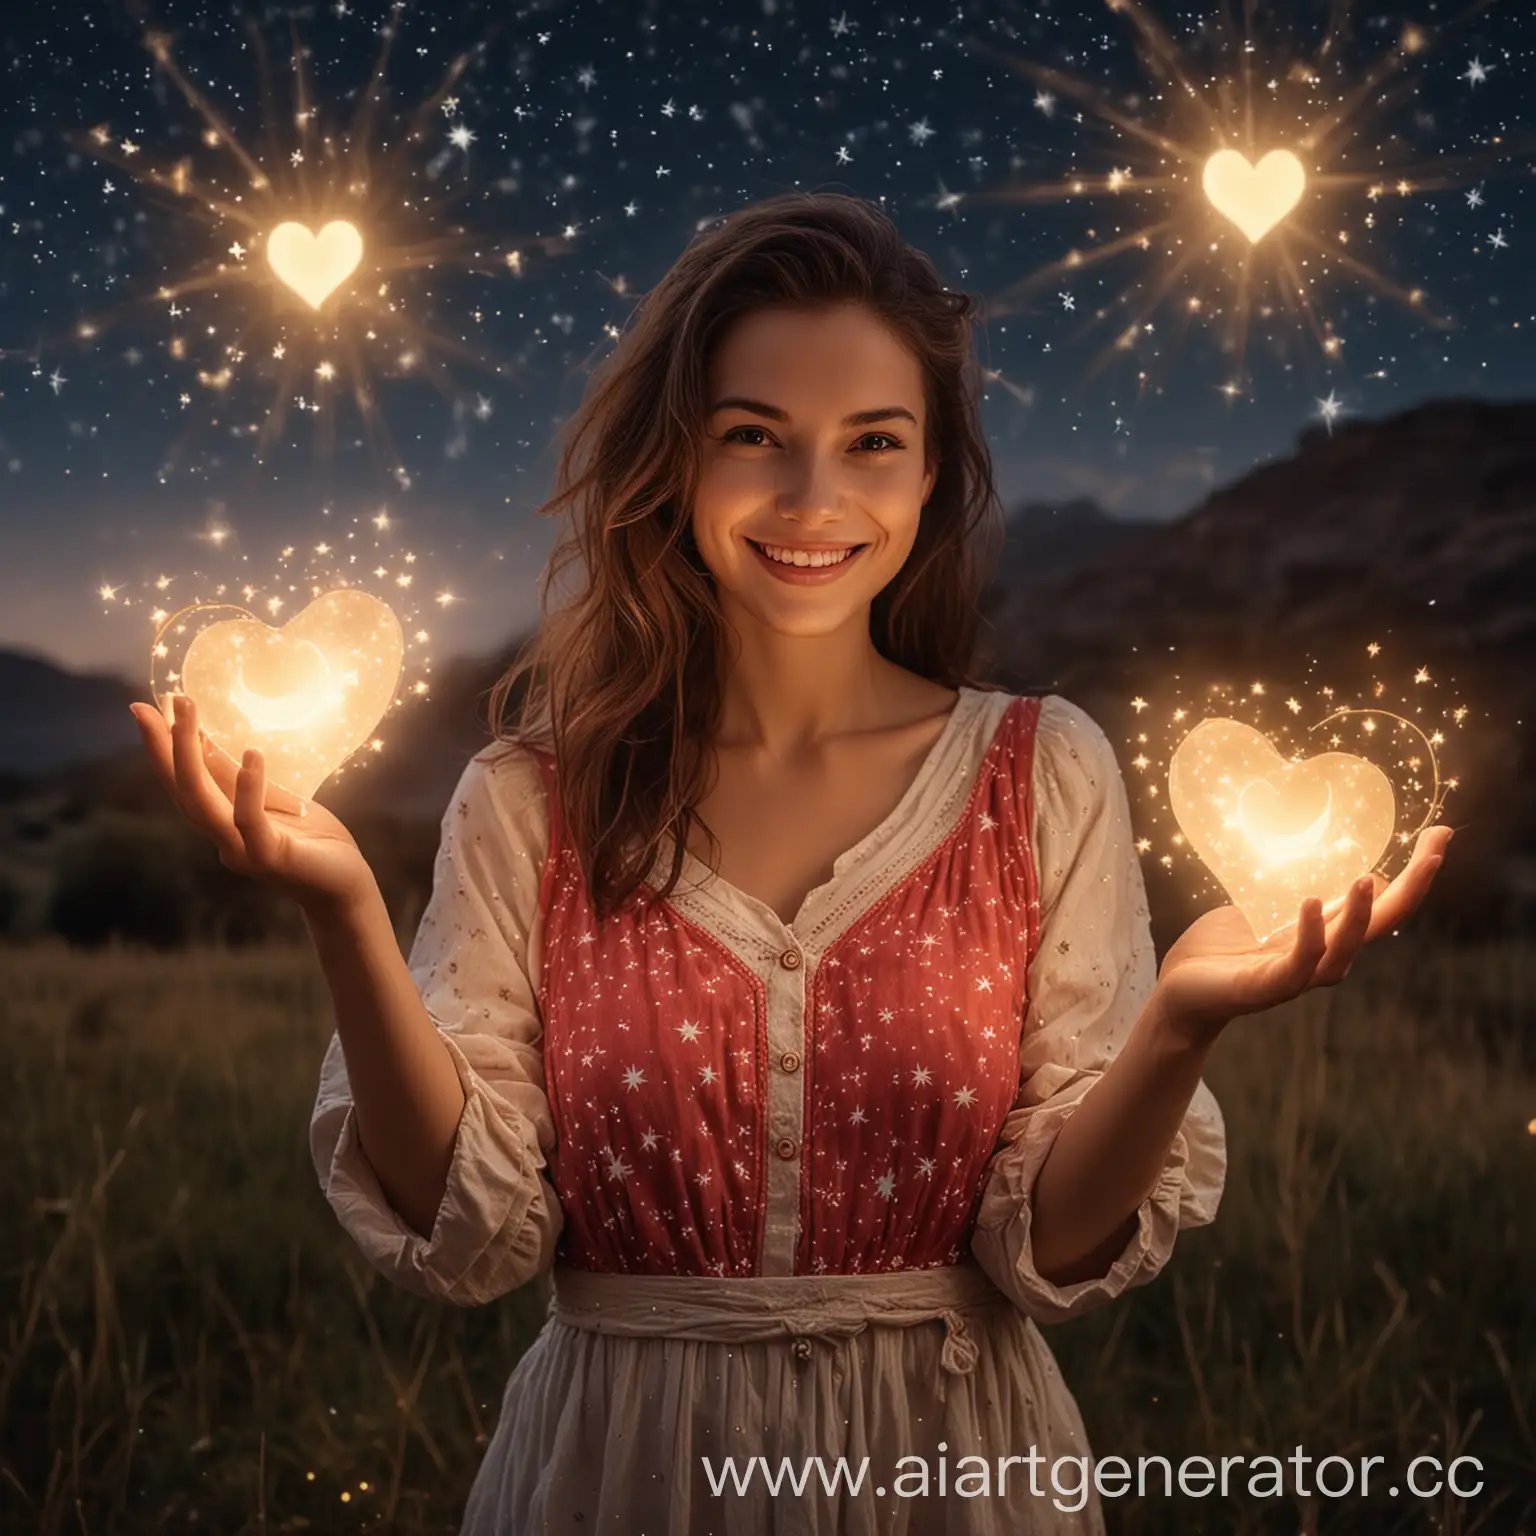 Изображение улыбающейся женщины, держащей в руках светящиеся сердечки. За её спиной мягко светится пейзаж с звёздами и луной.